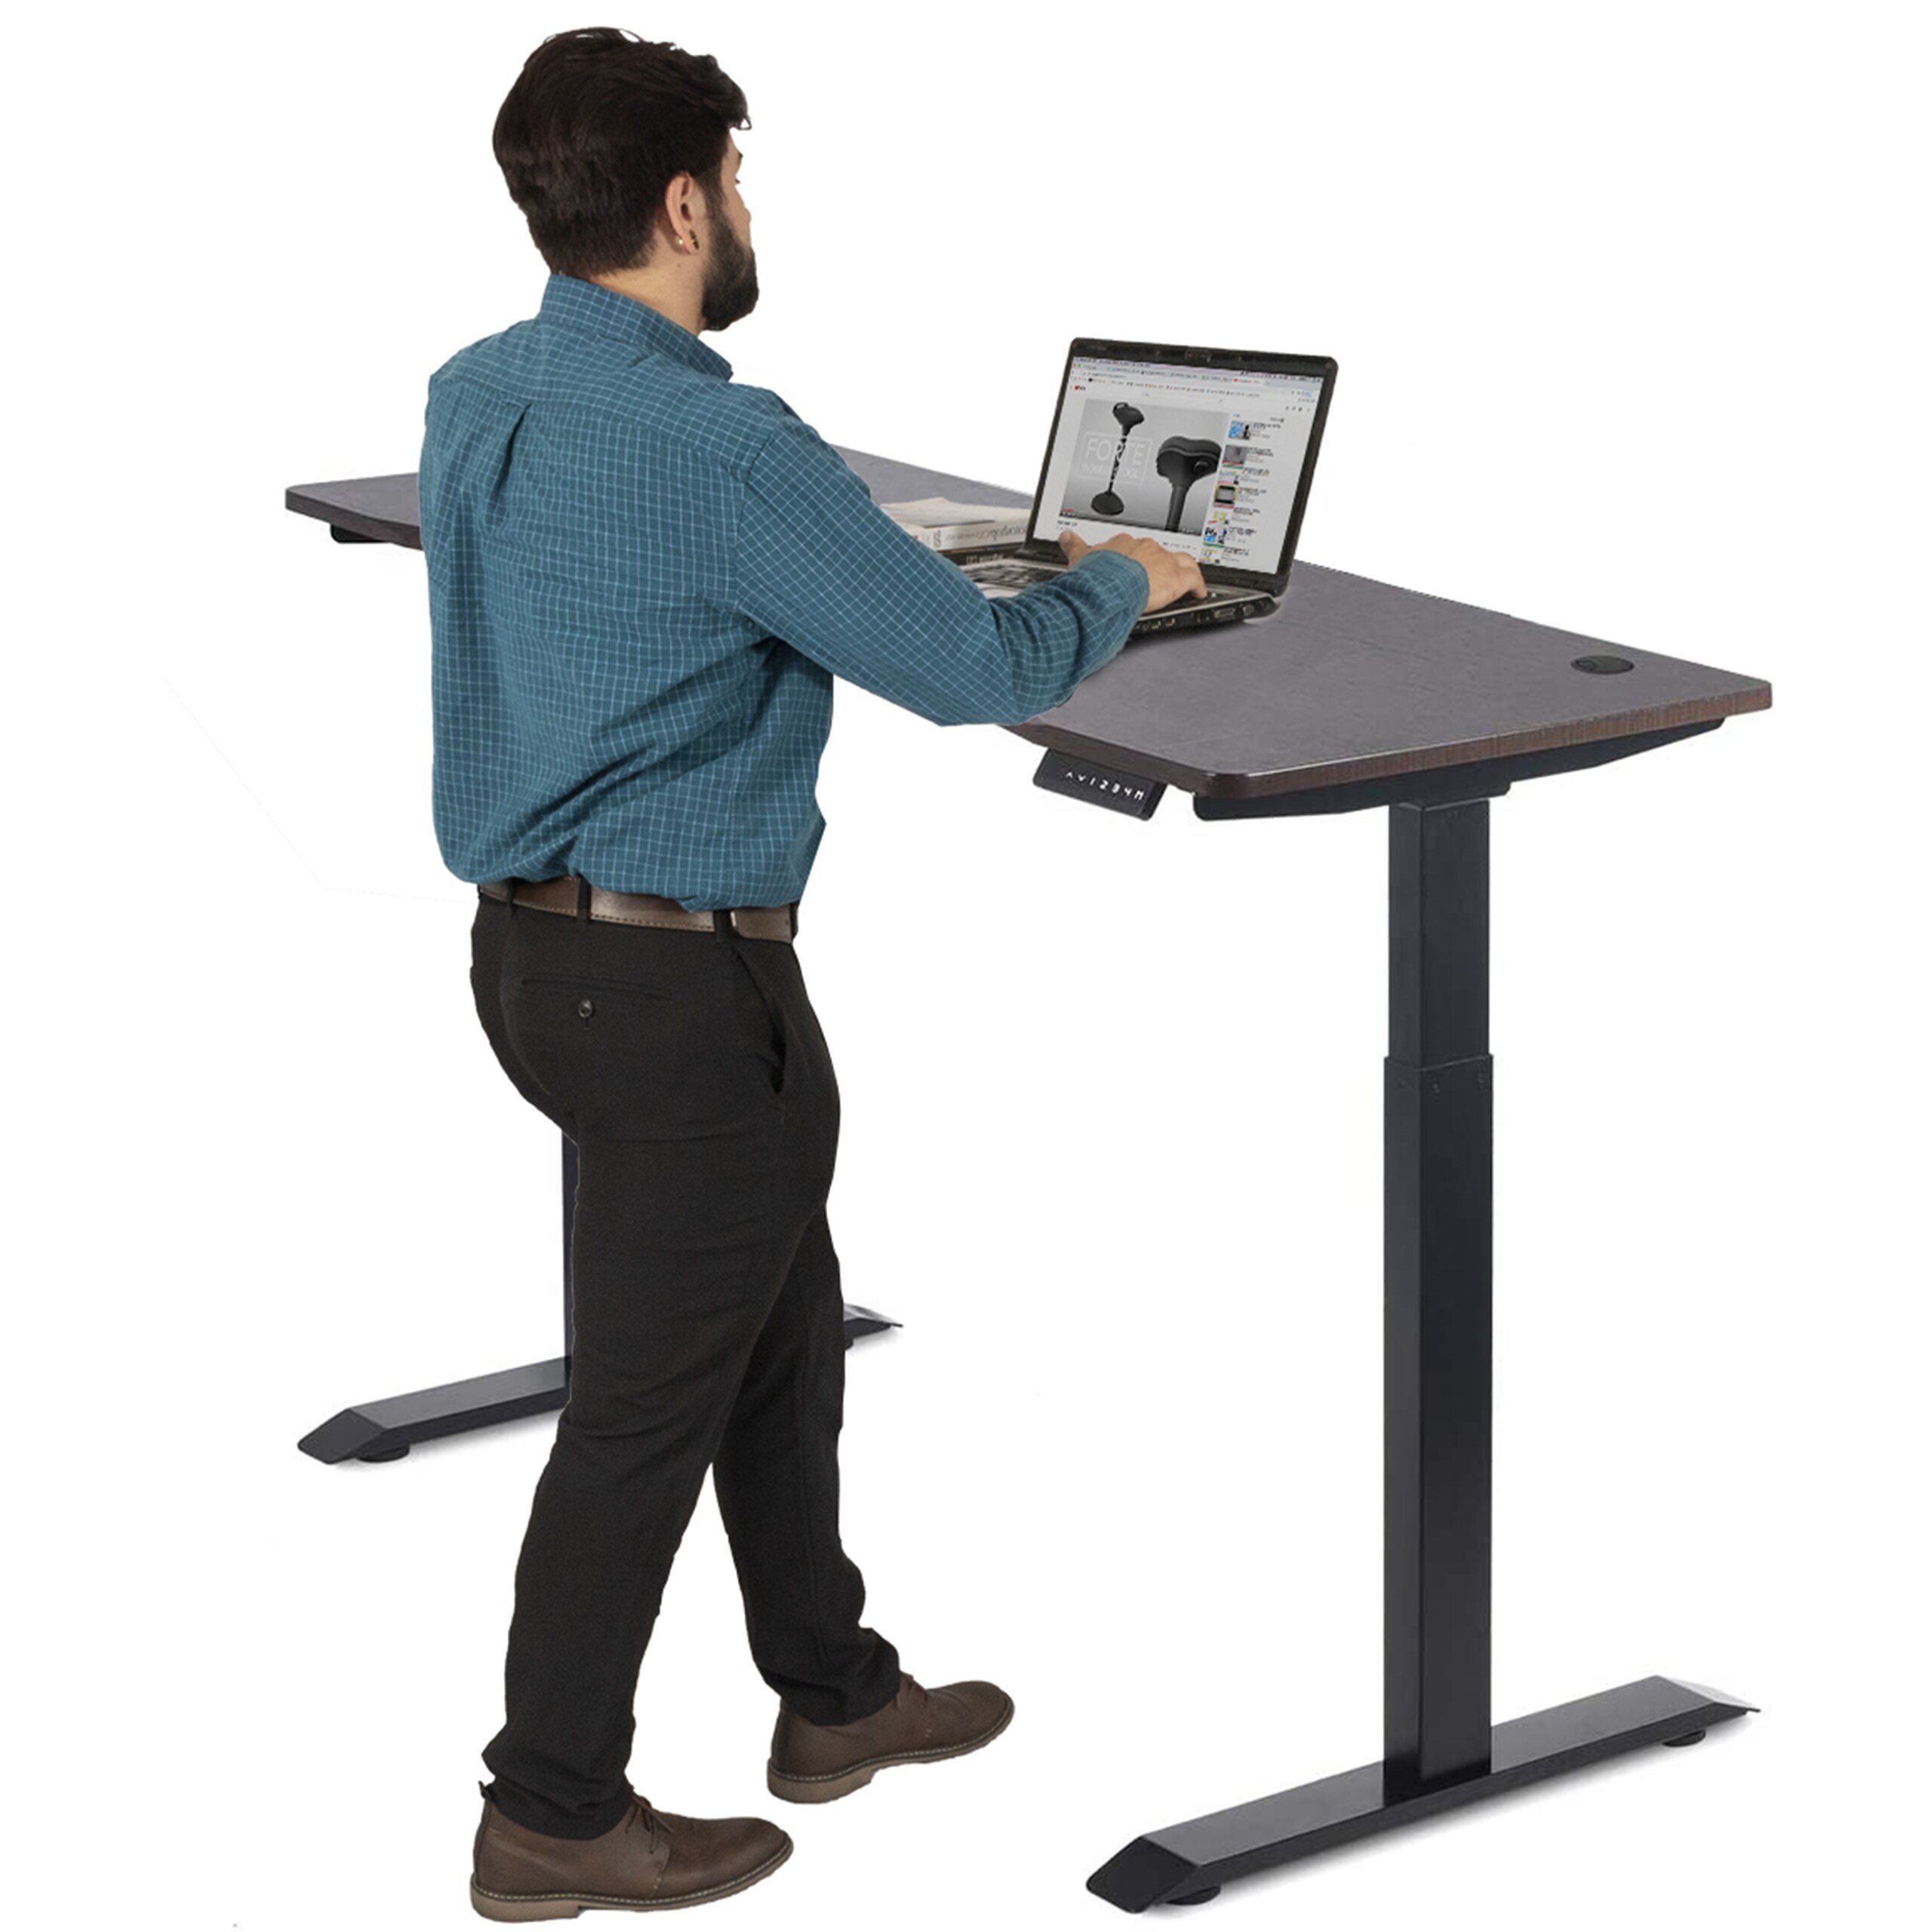 Electric Standing Desk 60x24, Height-Adjustable Standing Desk